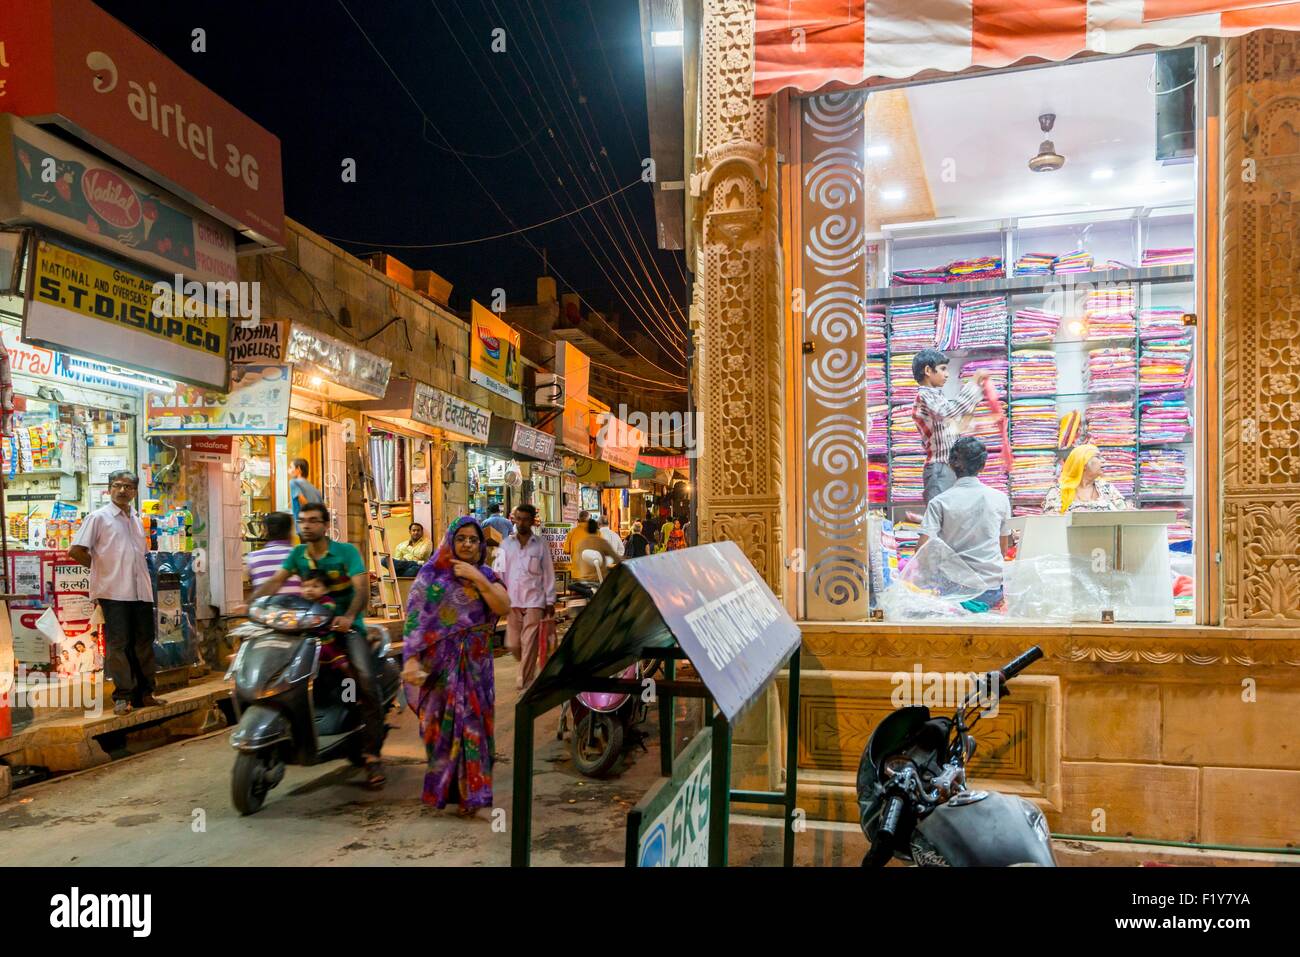 Indien, Rajasthan Zustand, Jaisalmer, Straßenszene bei Nacht Stockfoto